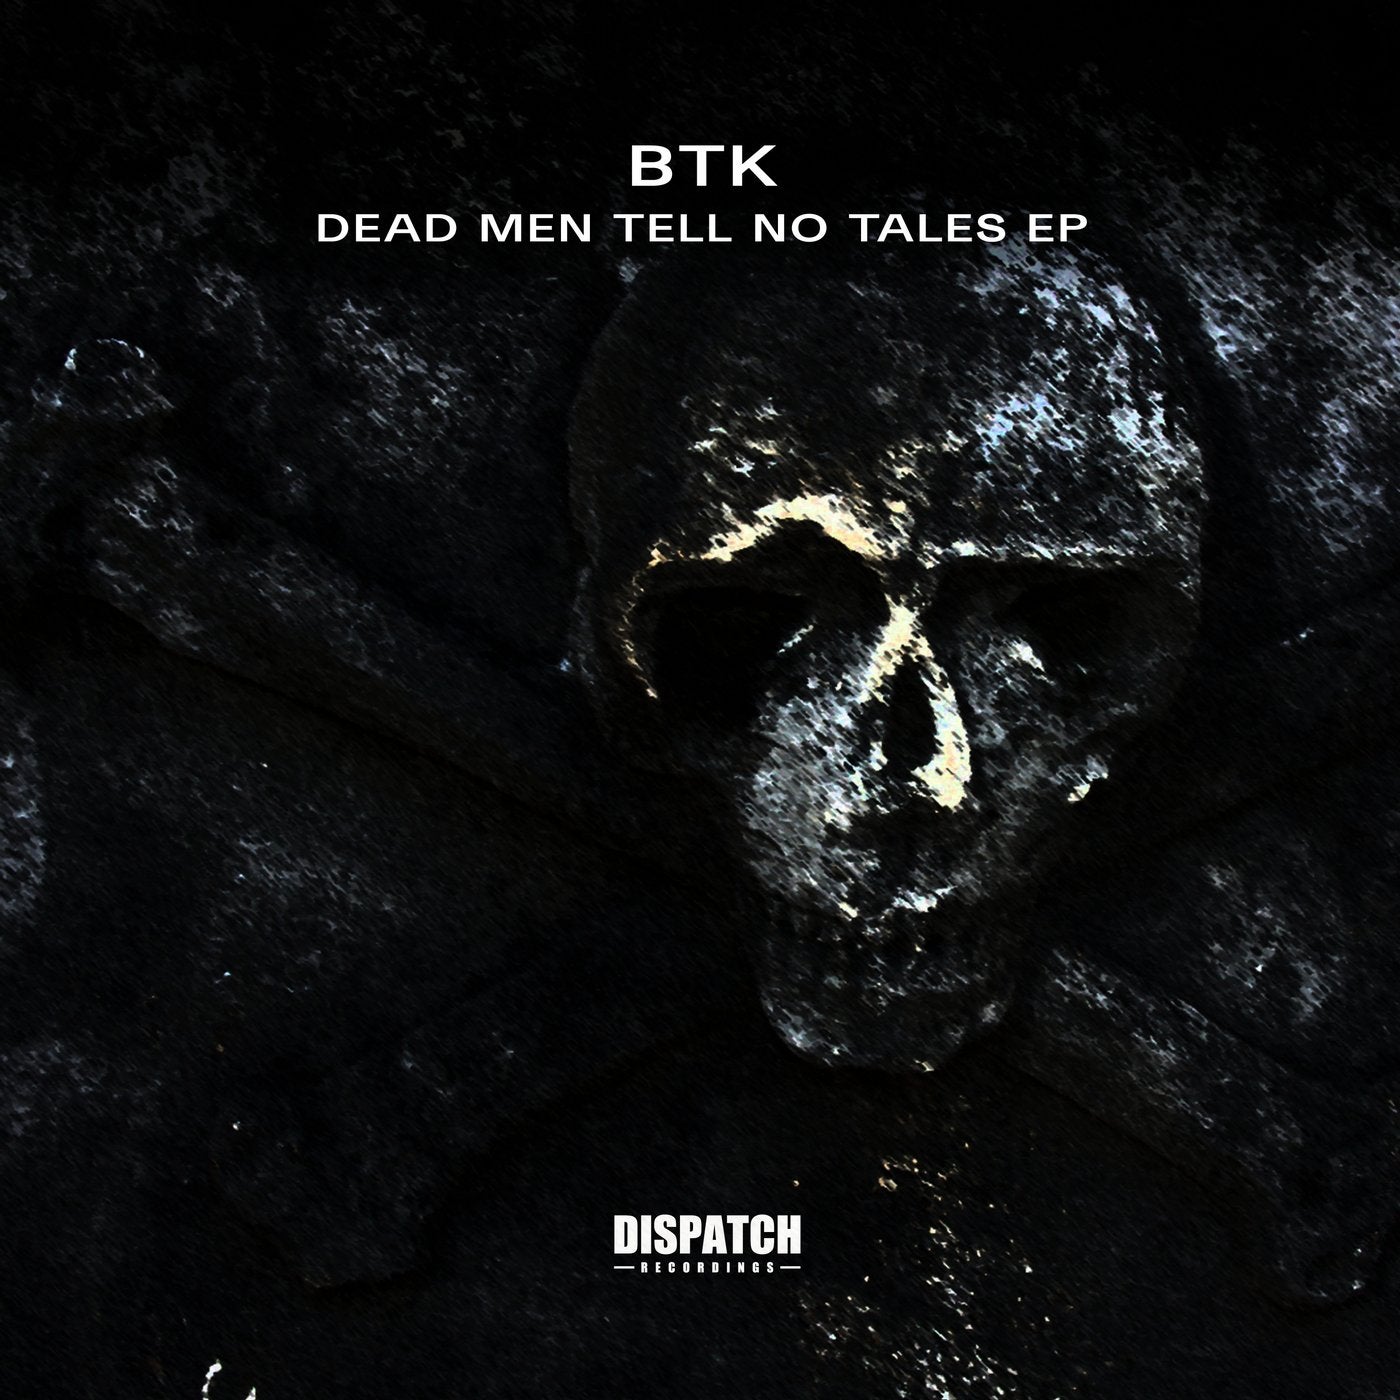 Dead Men Tell No Tales EP